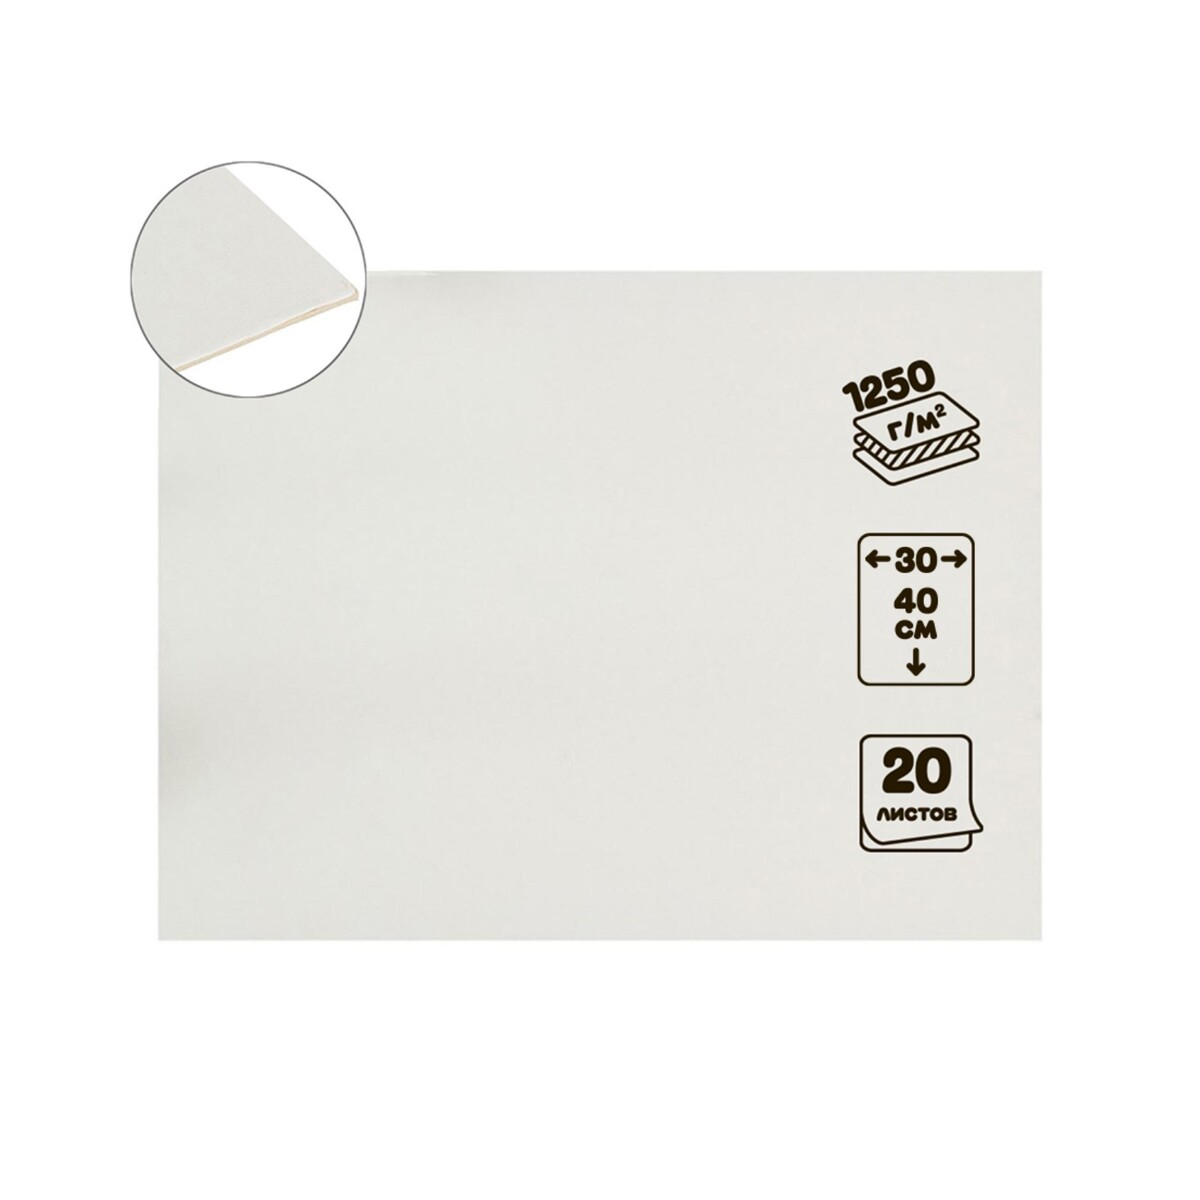 Картон переплетный 2.0 мм, 30 х 40 см, 20 листов, 1250 г/м², белый картон белый двухсторонний а4 10 листов мульти пульти